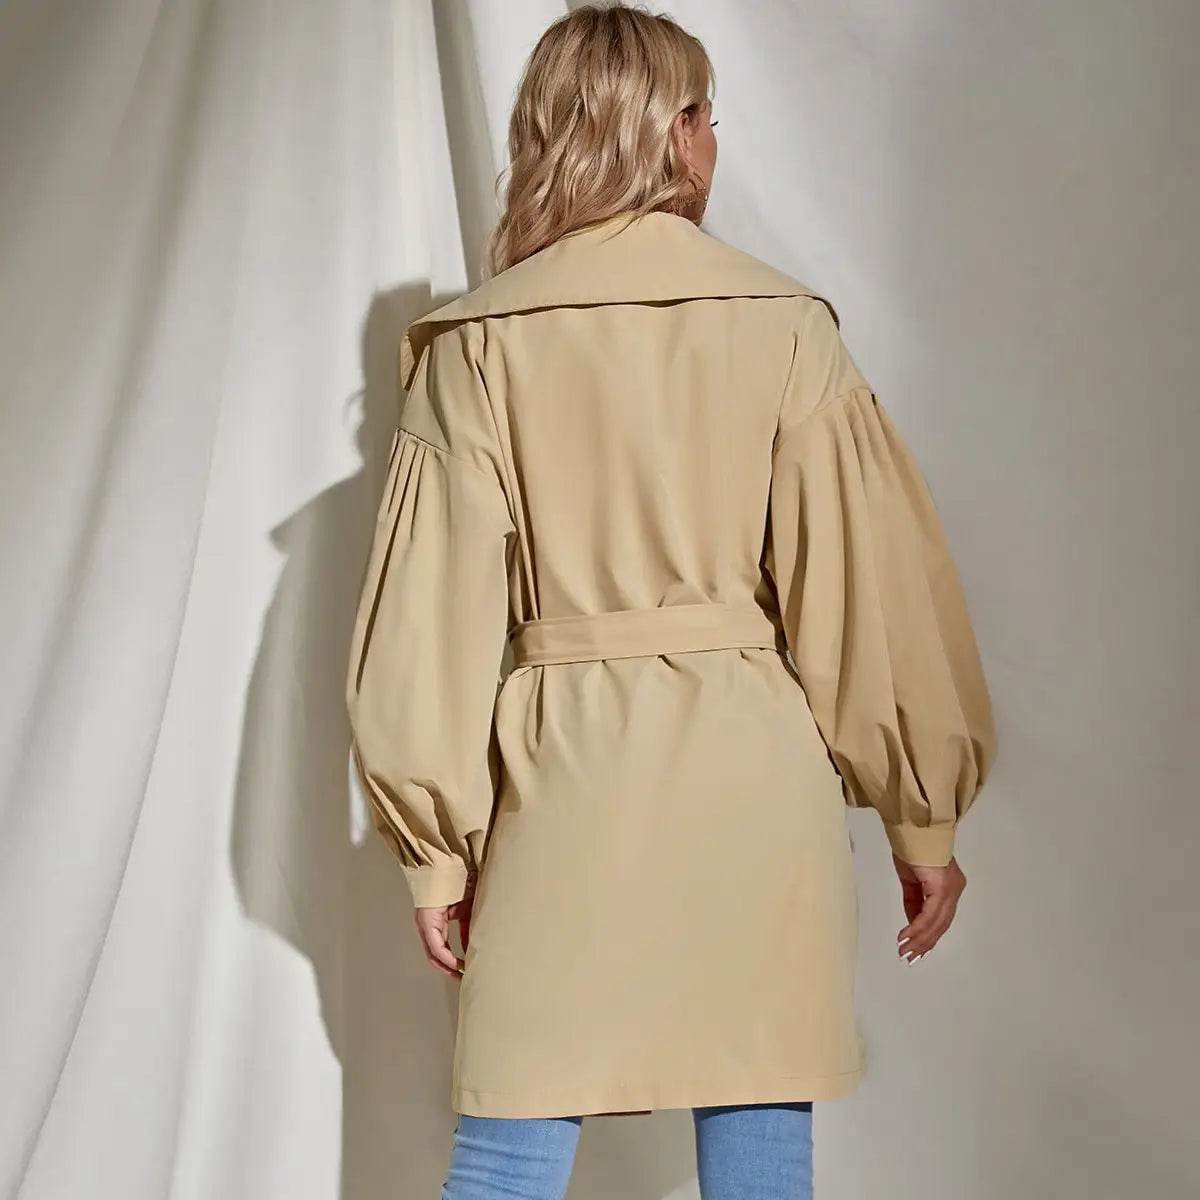 Lovemi – Zweireihiger Trenchcoat für Damen, Vintage, lang